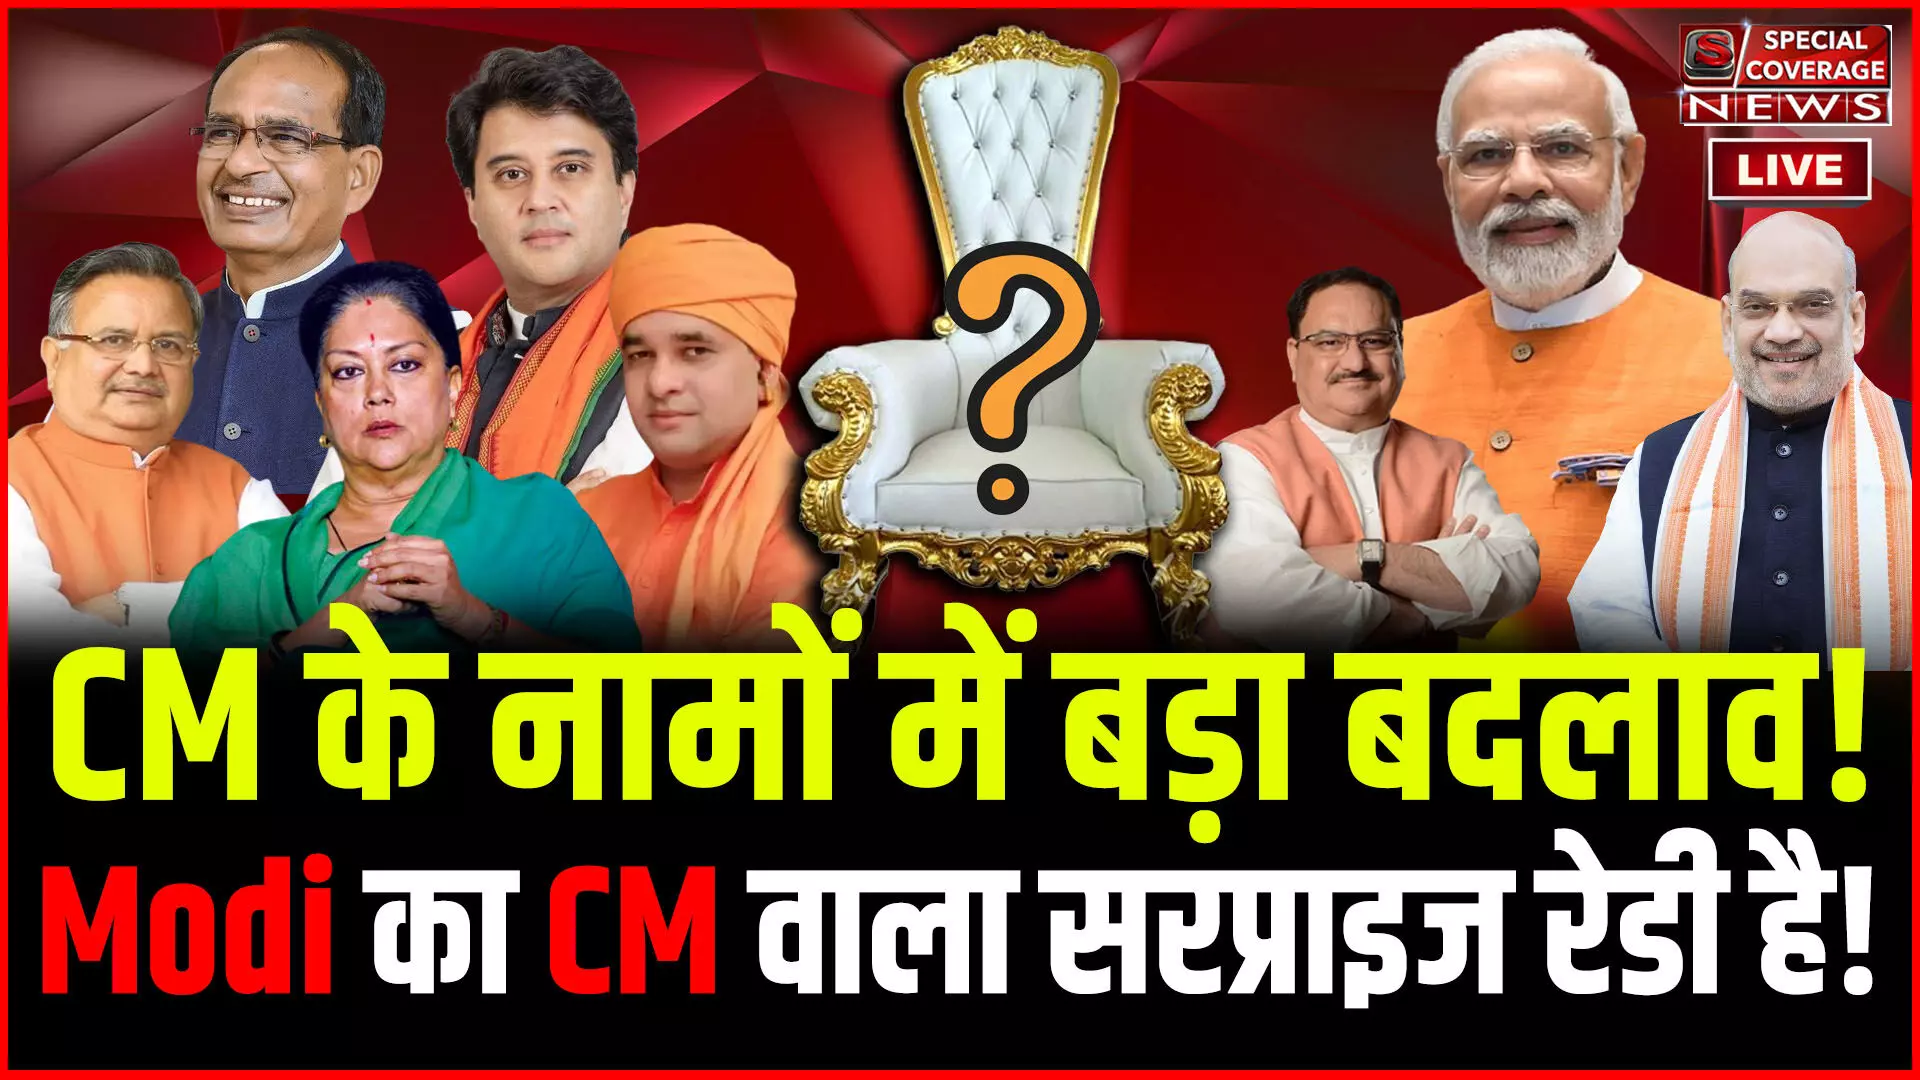 कौन बनेगा मुख्यमंत्री? नामों में बड़ा बदलाव! Modi का CM वाला सरप्राइज रेडी है! CM Race में कौन आगे?